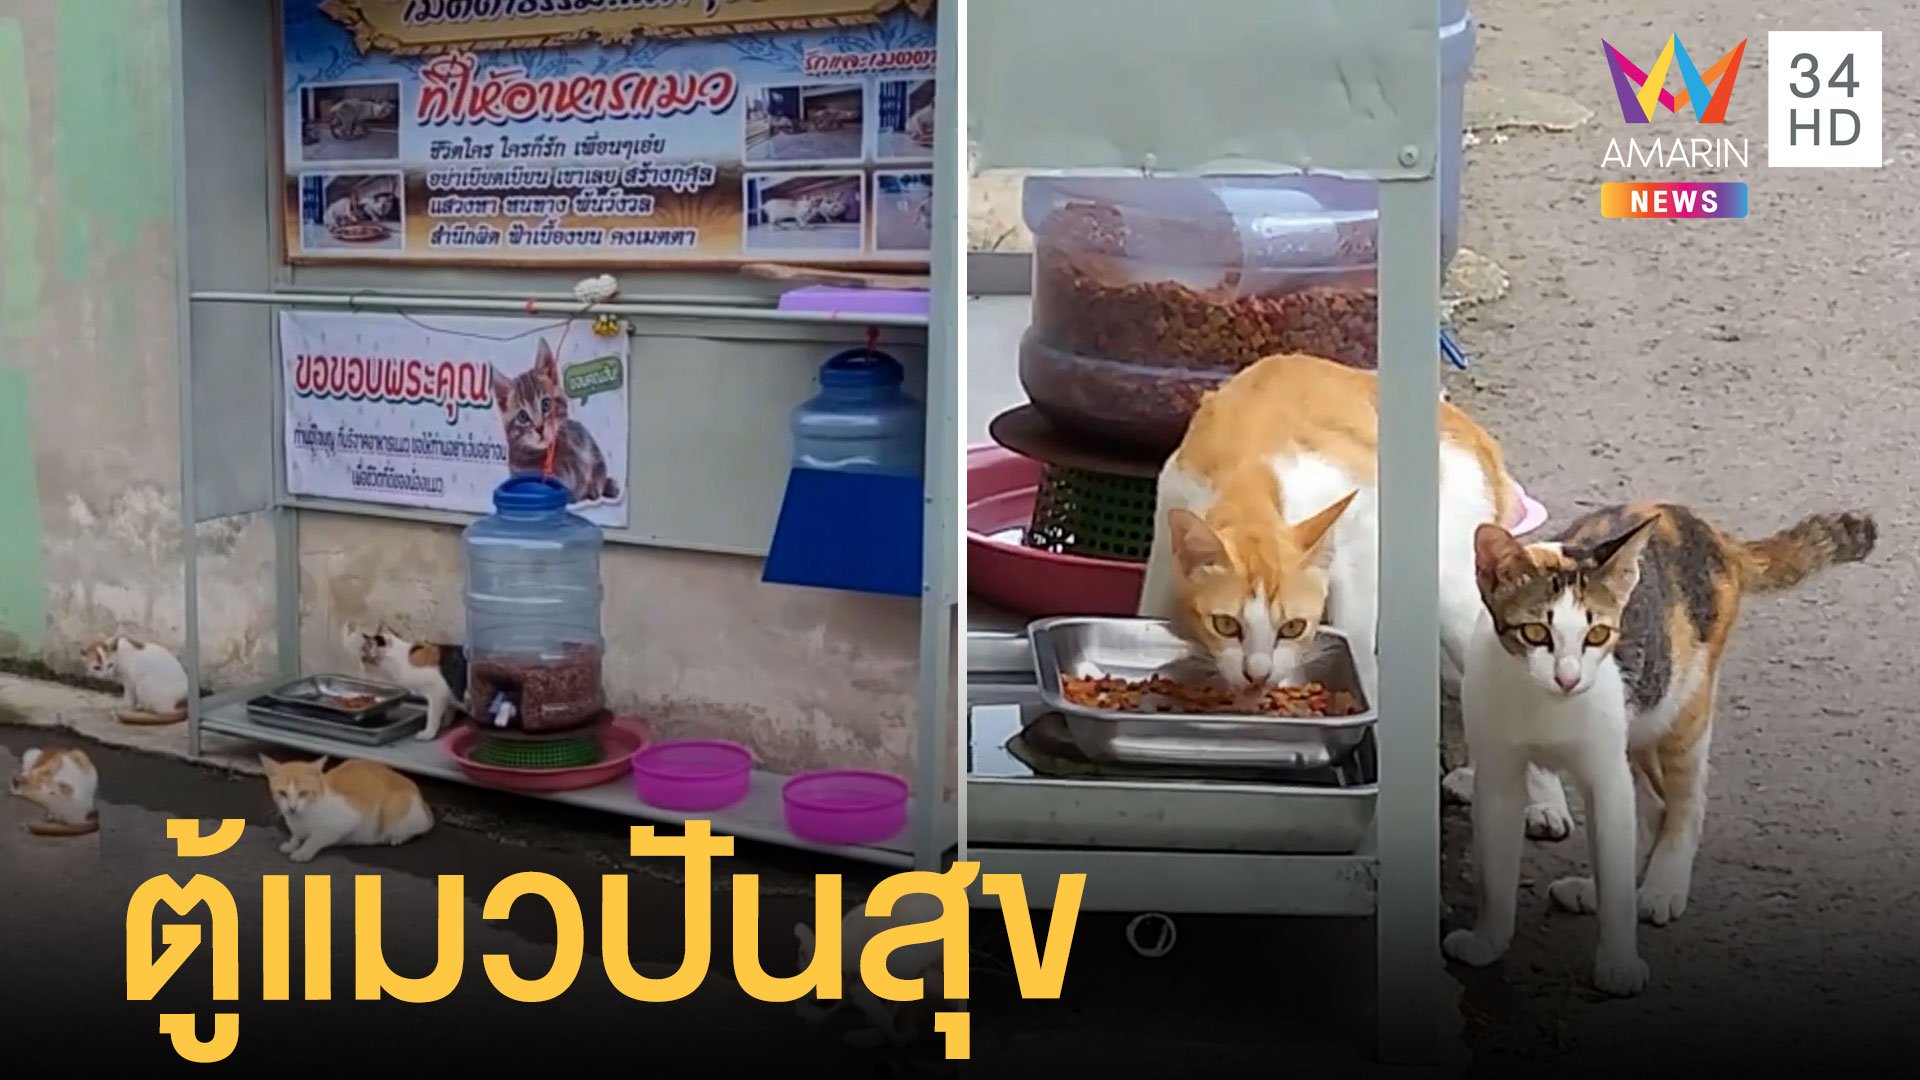 ลุงลำพูนตั้งตู้ปันสุขให้แมวจร บุฟเฟต์อาหารเม็ดทั้งวัน | ข่าวอรุณอมรินทร์ | 10 ก.ค. 65 | AMARIN TVHD34